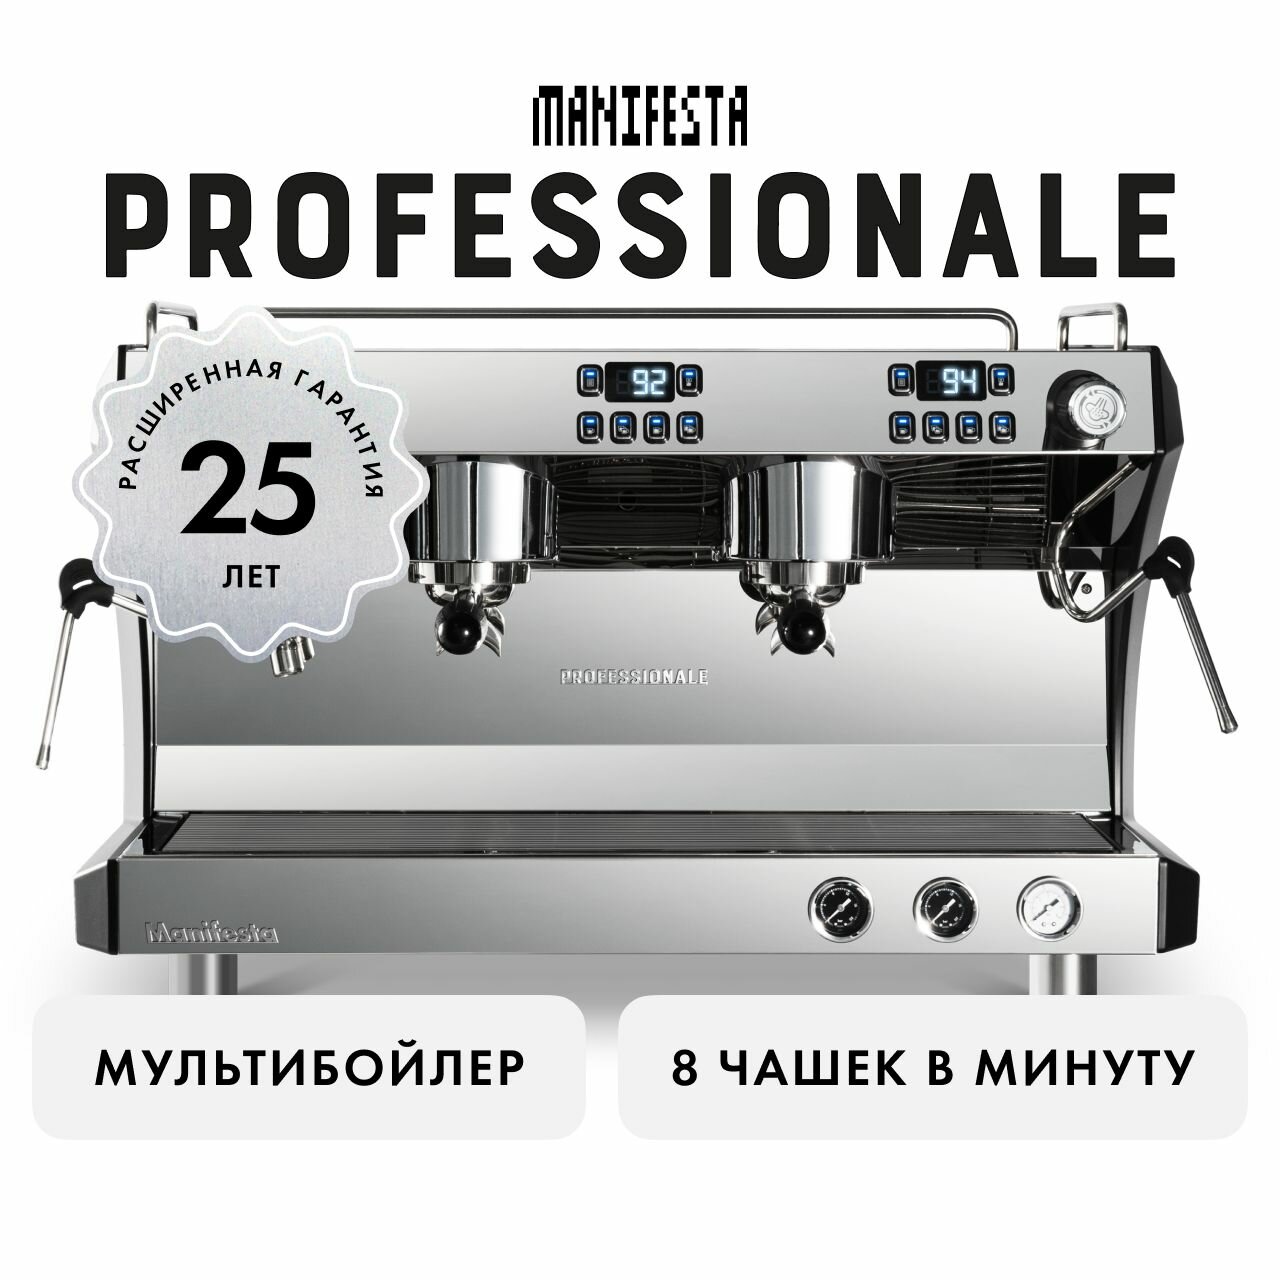 Профессиональная кофемашина Manifesta Professionale - фотография № 1